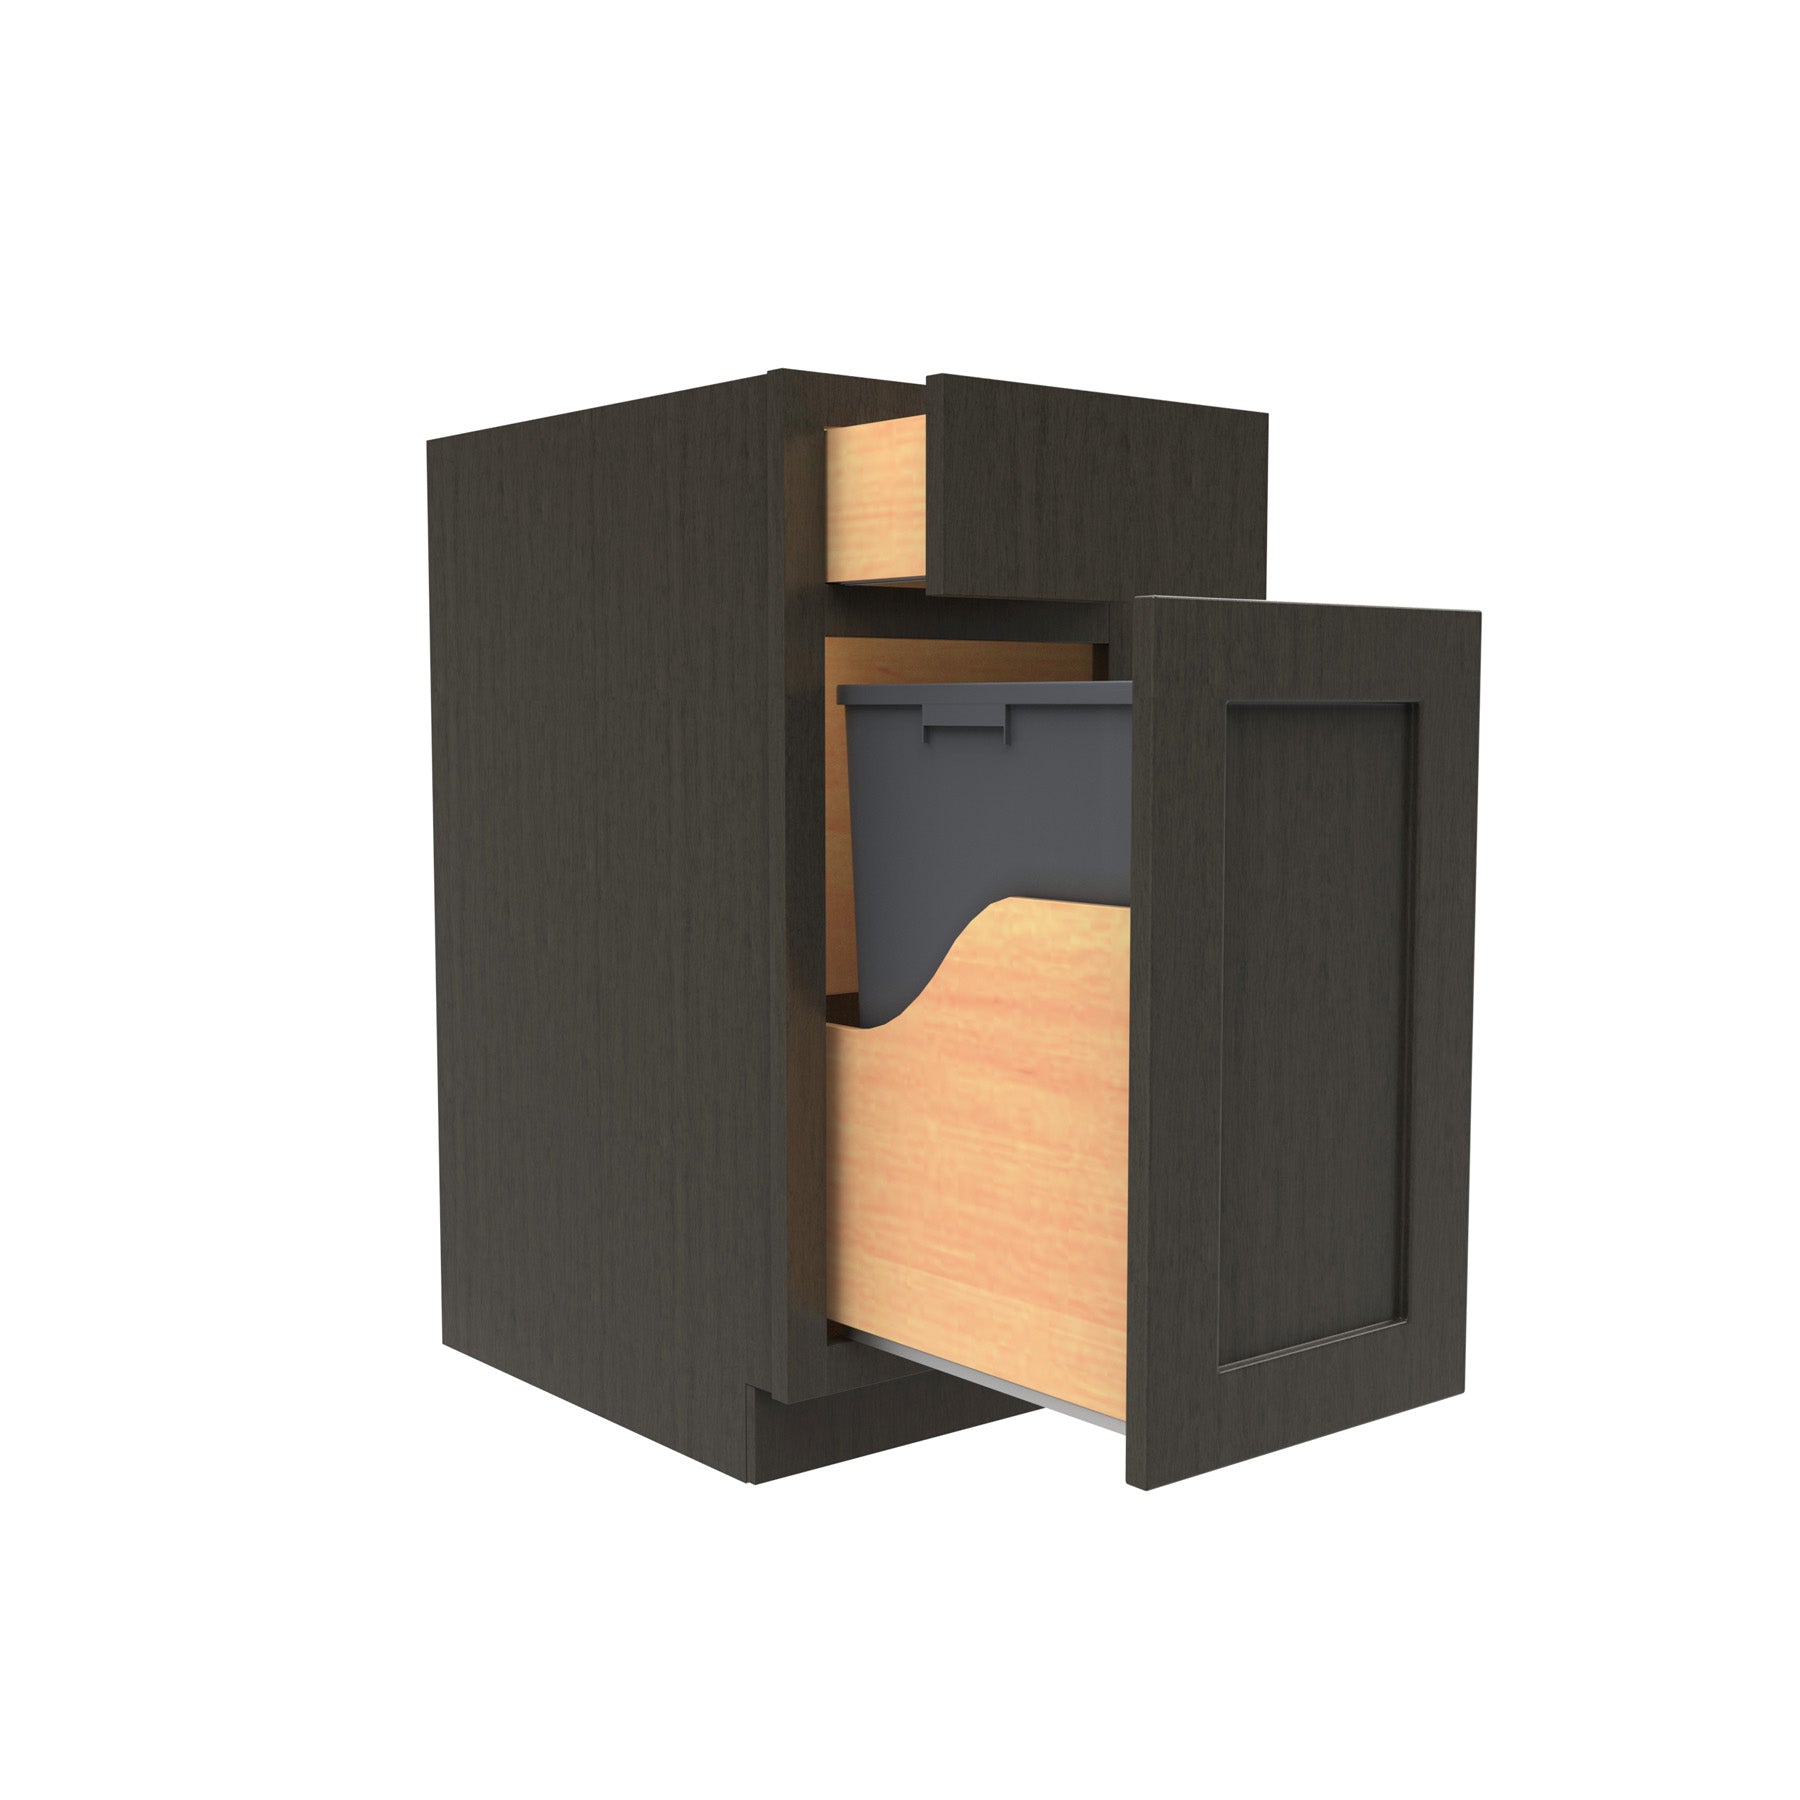 Luxor Smoky Grey - Waste Basket Cabinet | 15"W x 34.5"H x 24"D